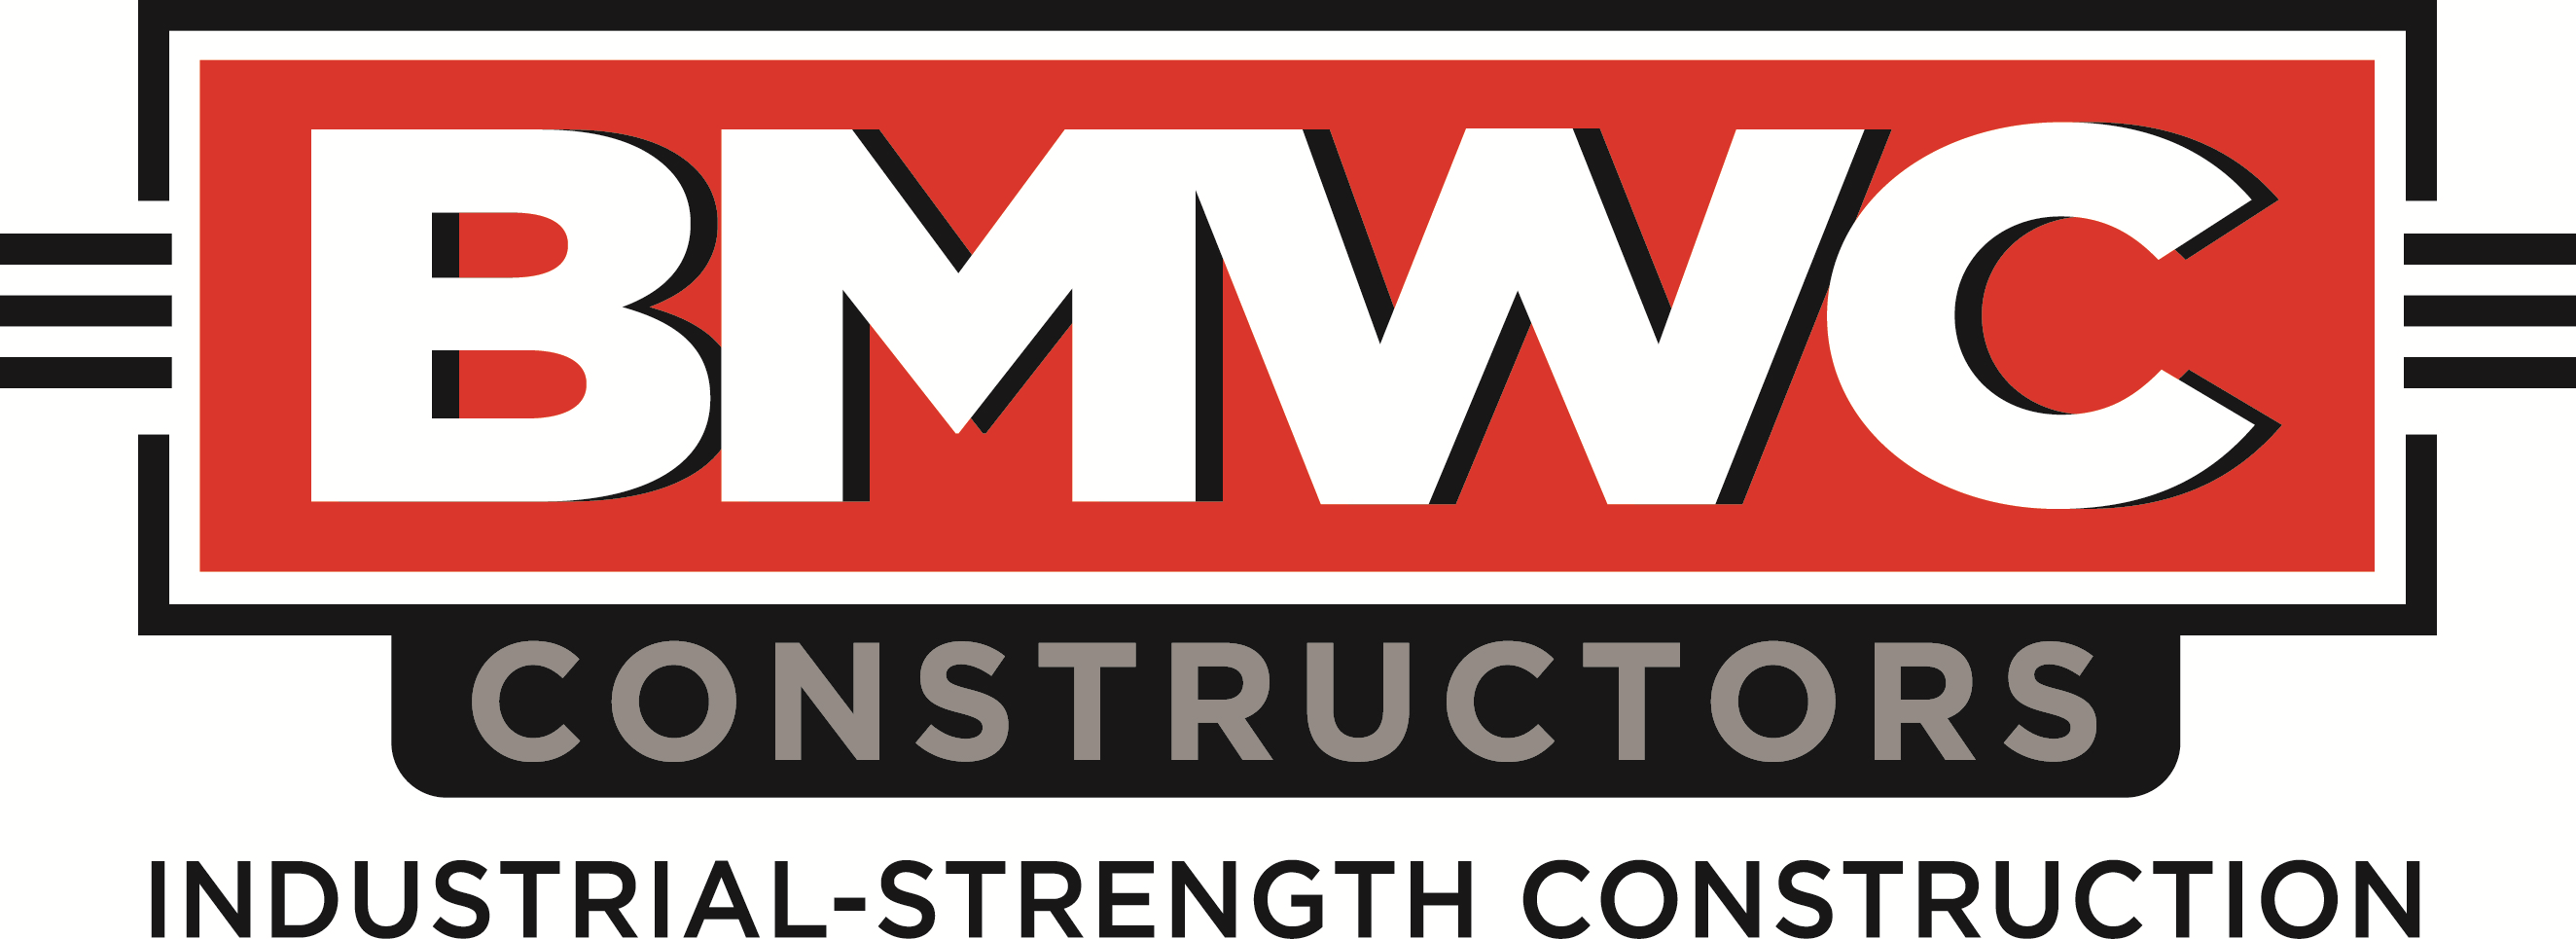 BMWC Constructors, Inc. Company Logo